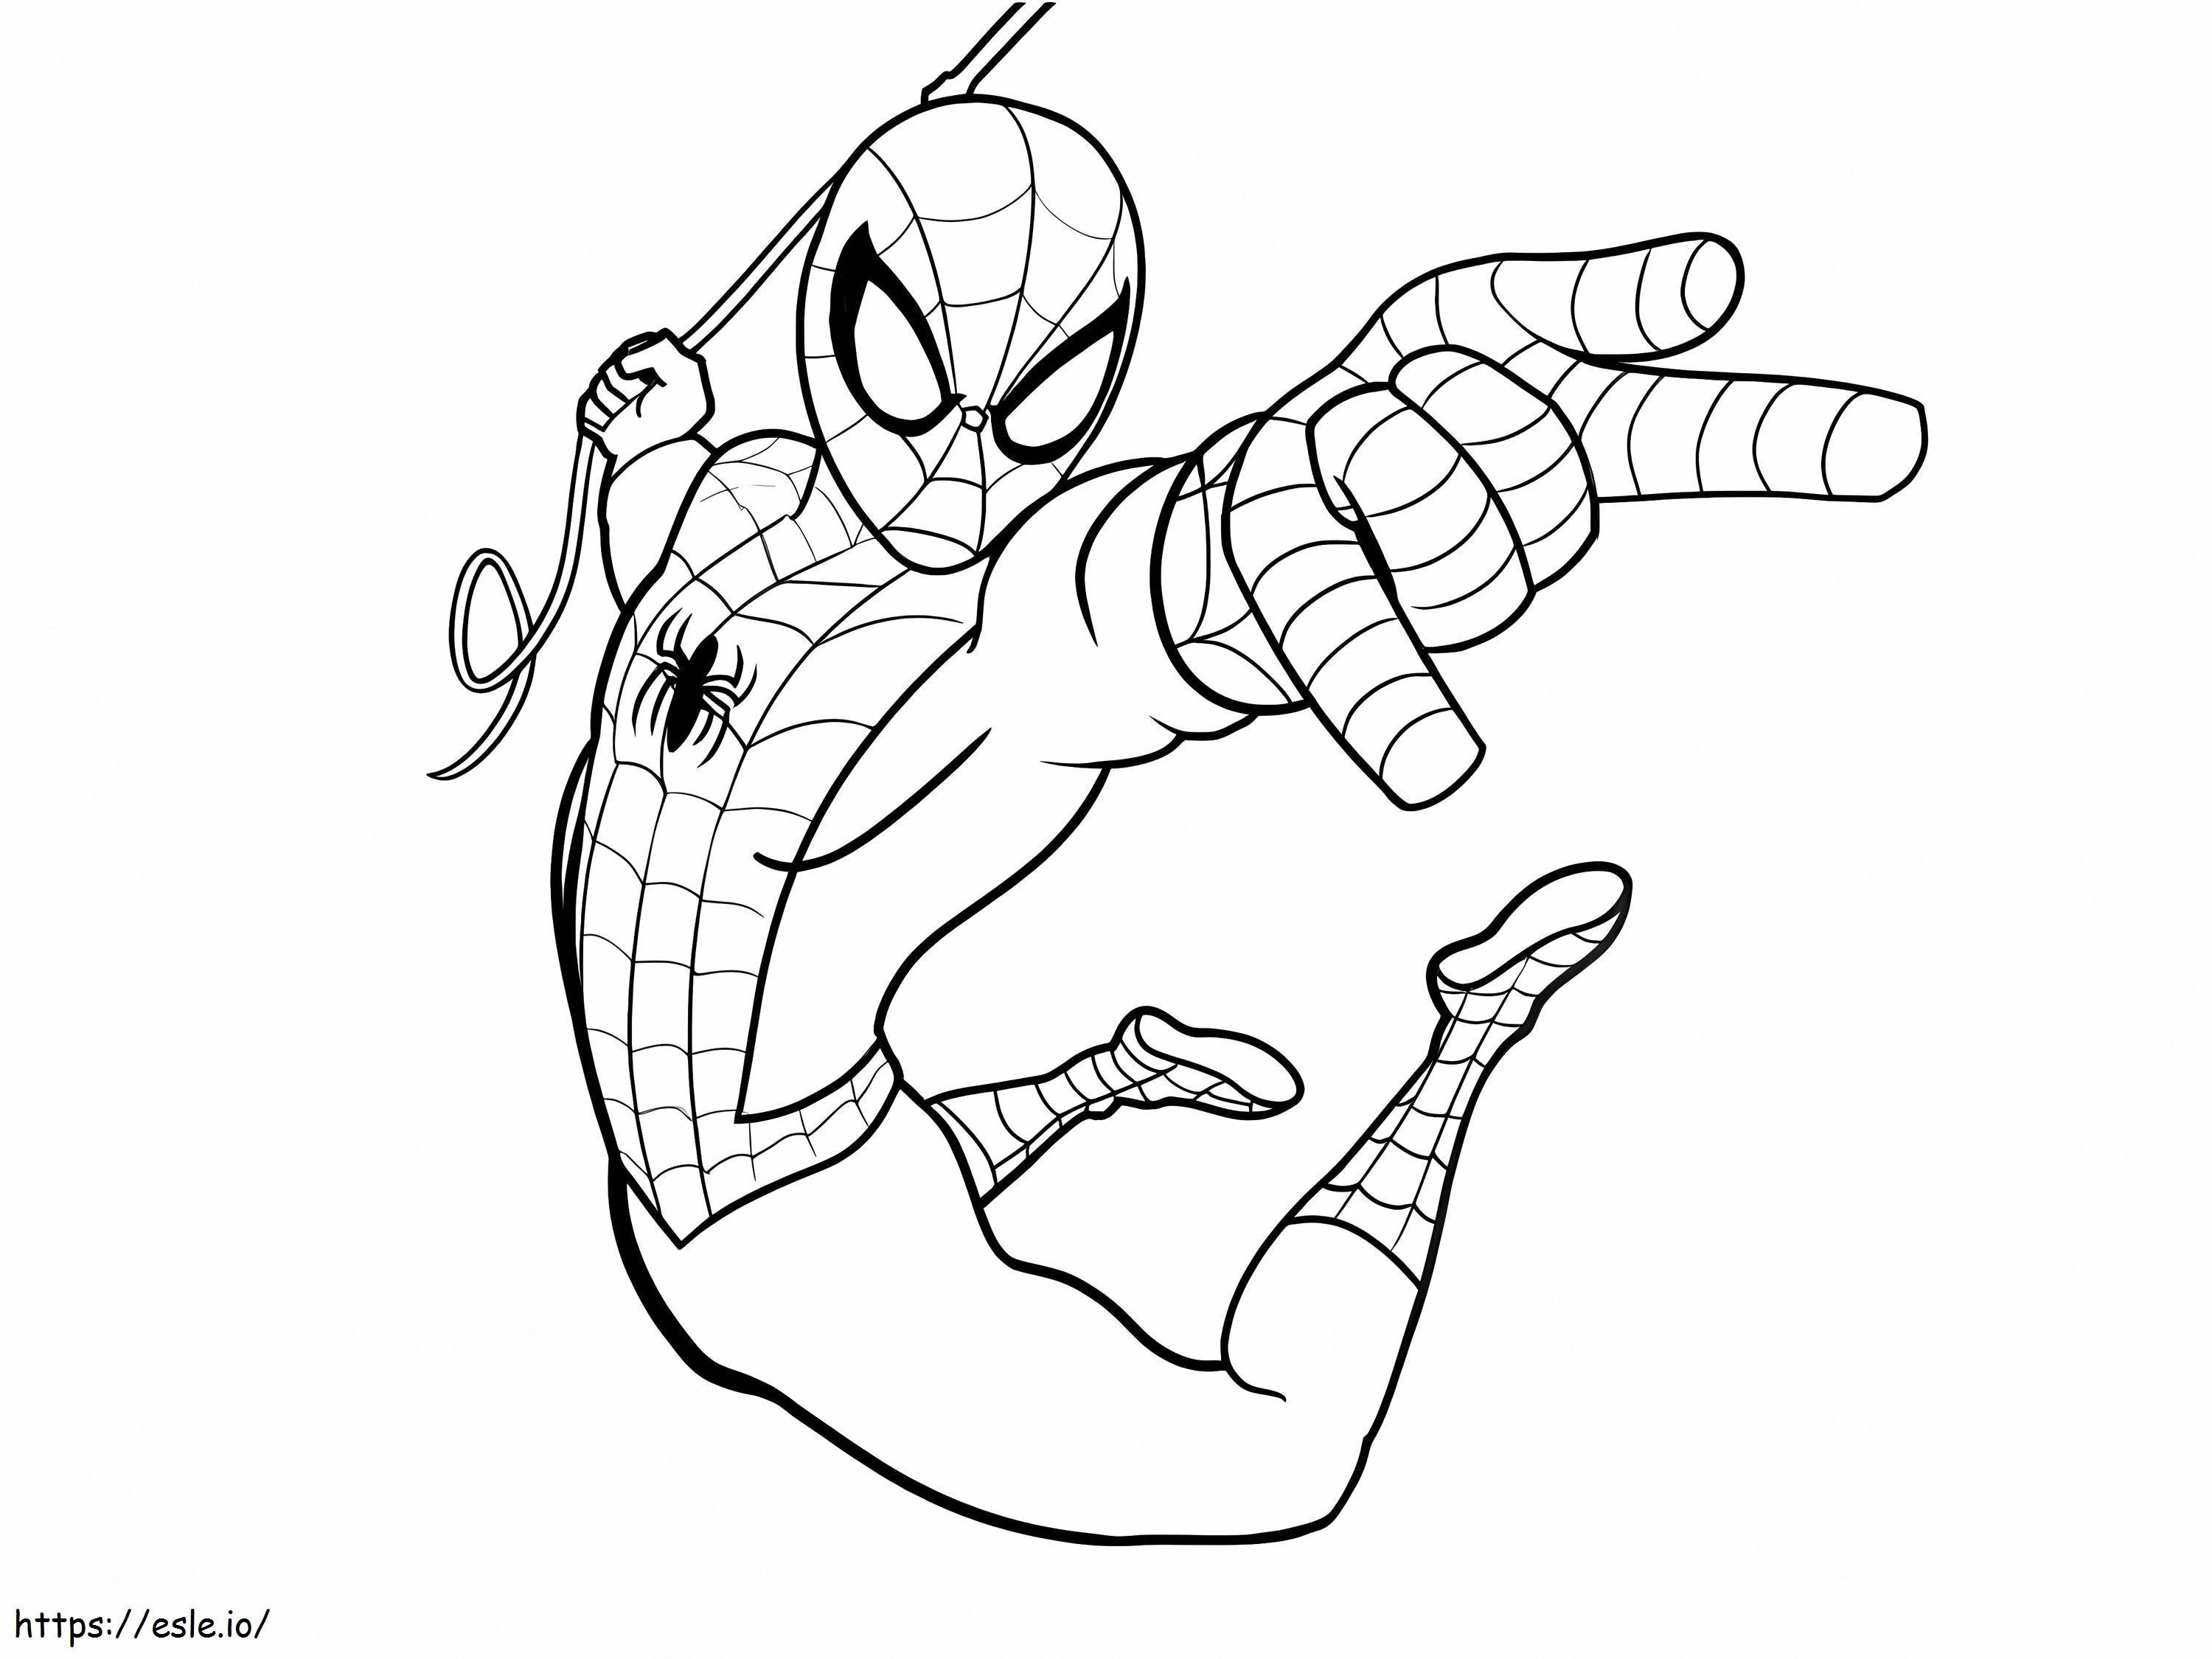 Coloriage Spider-Man 12 1024X768 à imprimer dessin